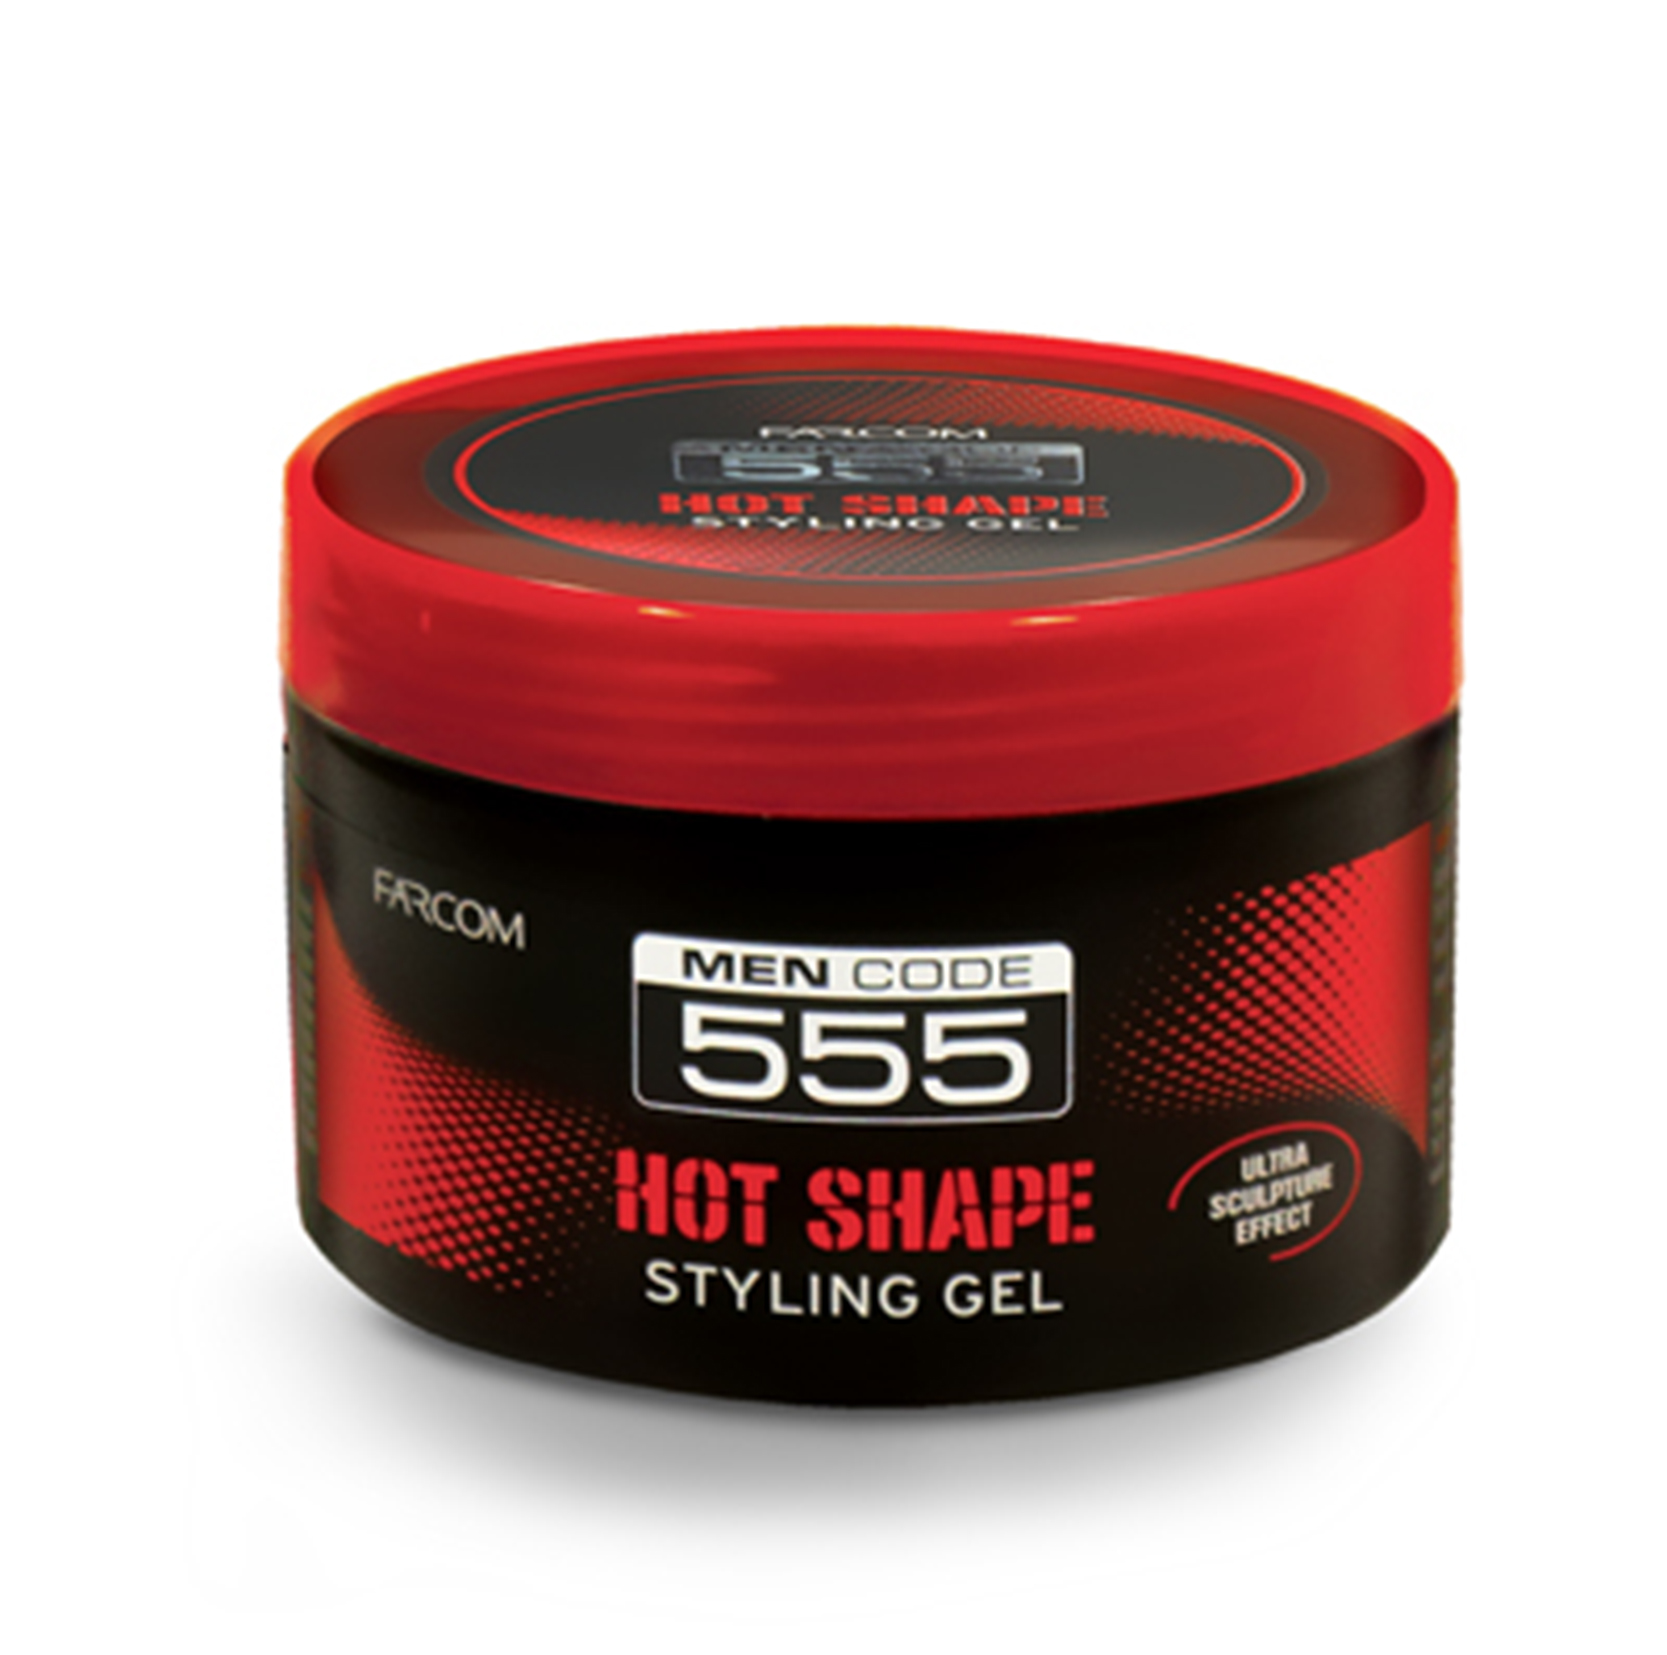 Styling Gel 555 Hot Shape 250ml